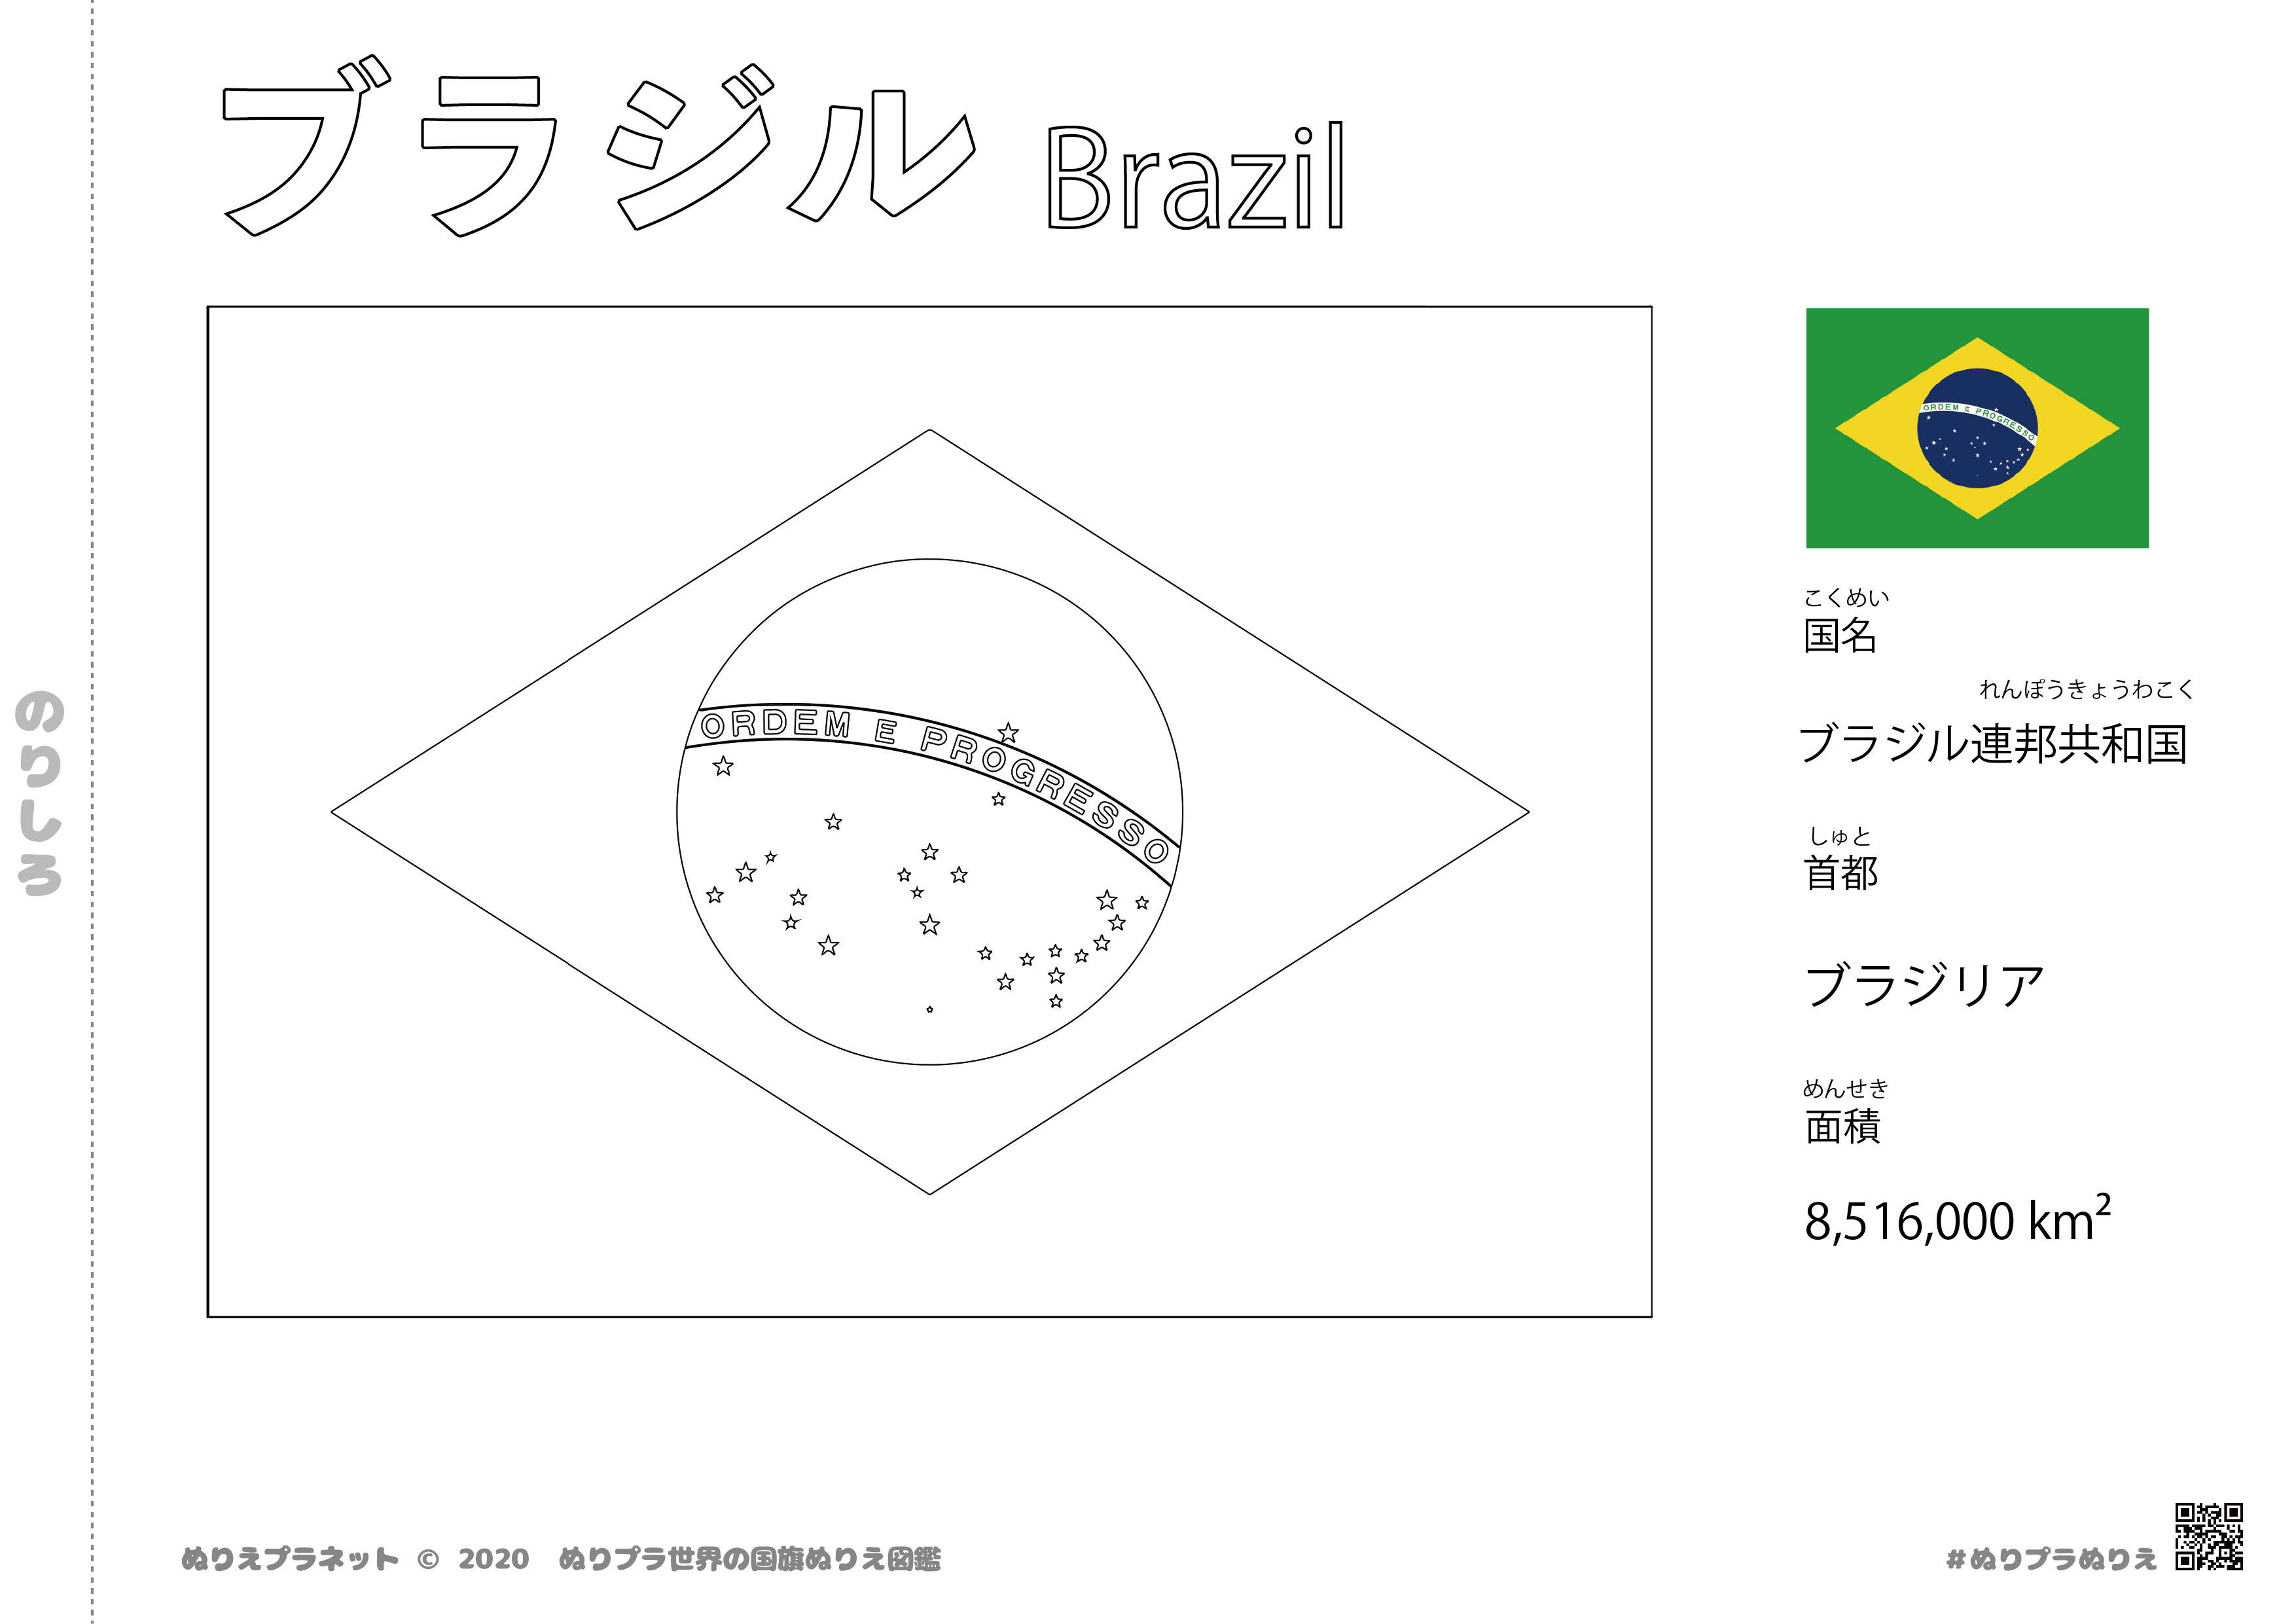 ブラジルの国旗塗り絵です。国名、首都、面積も覚えられます。